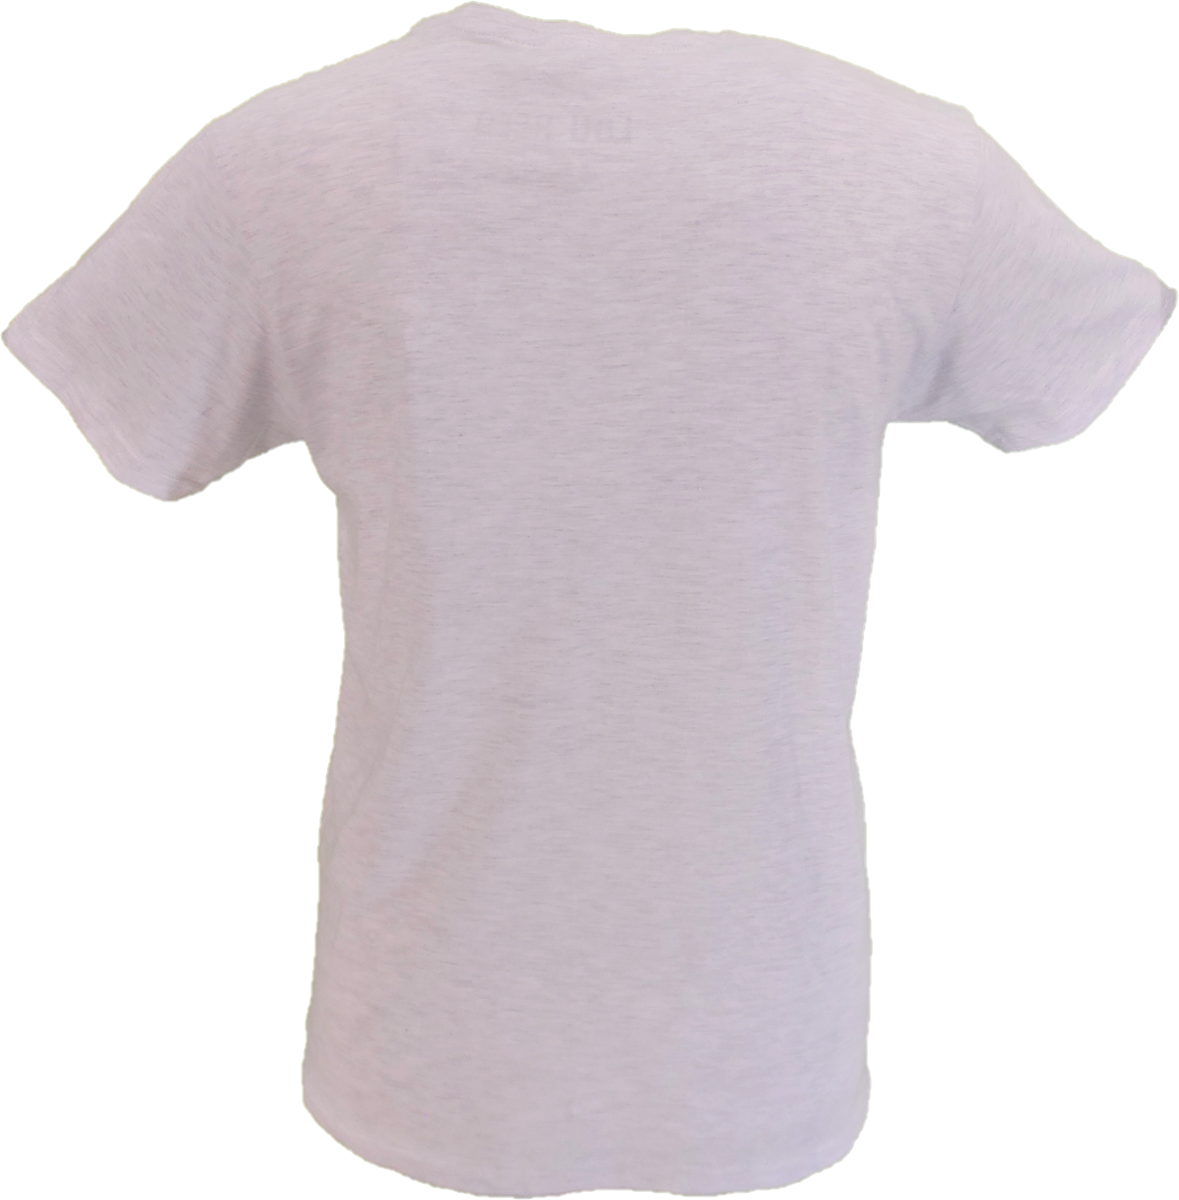 Camiseta oficial gris para hombre con listado de canciones de Lou Reed Transformer